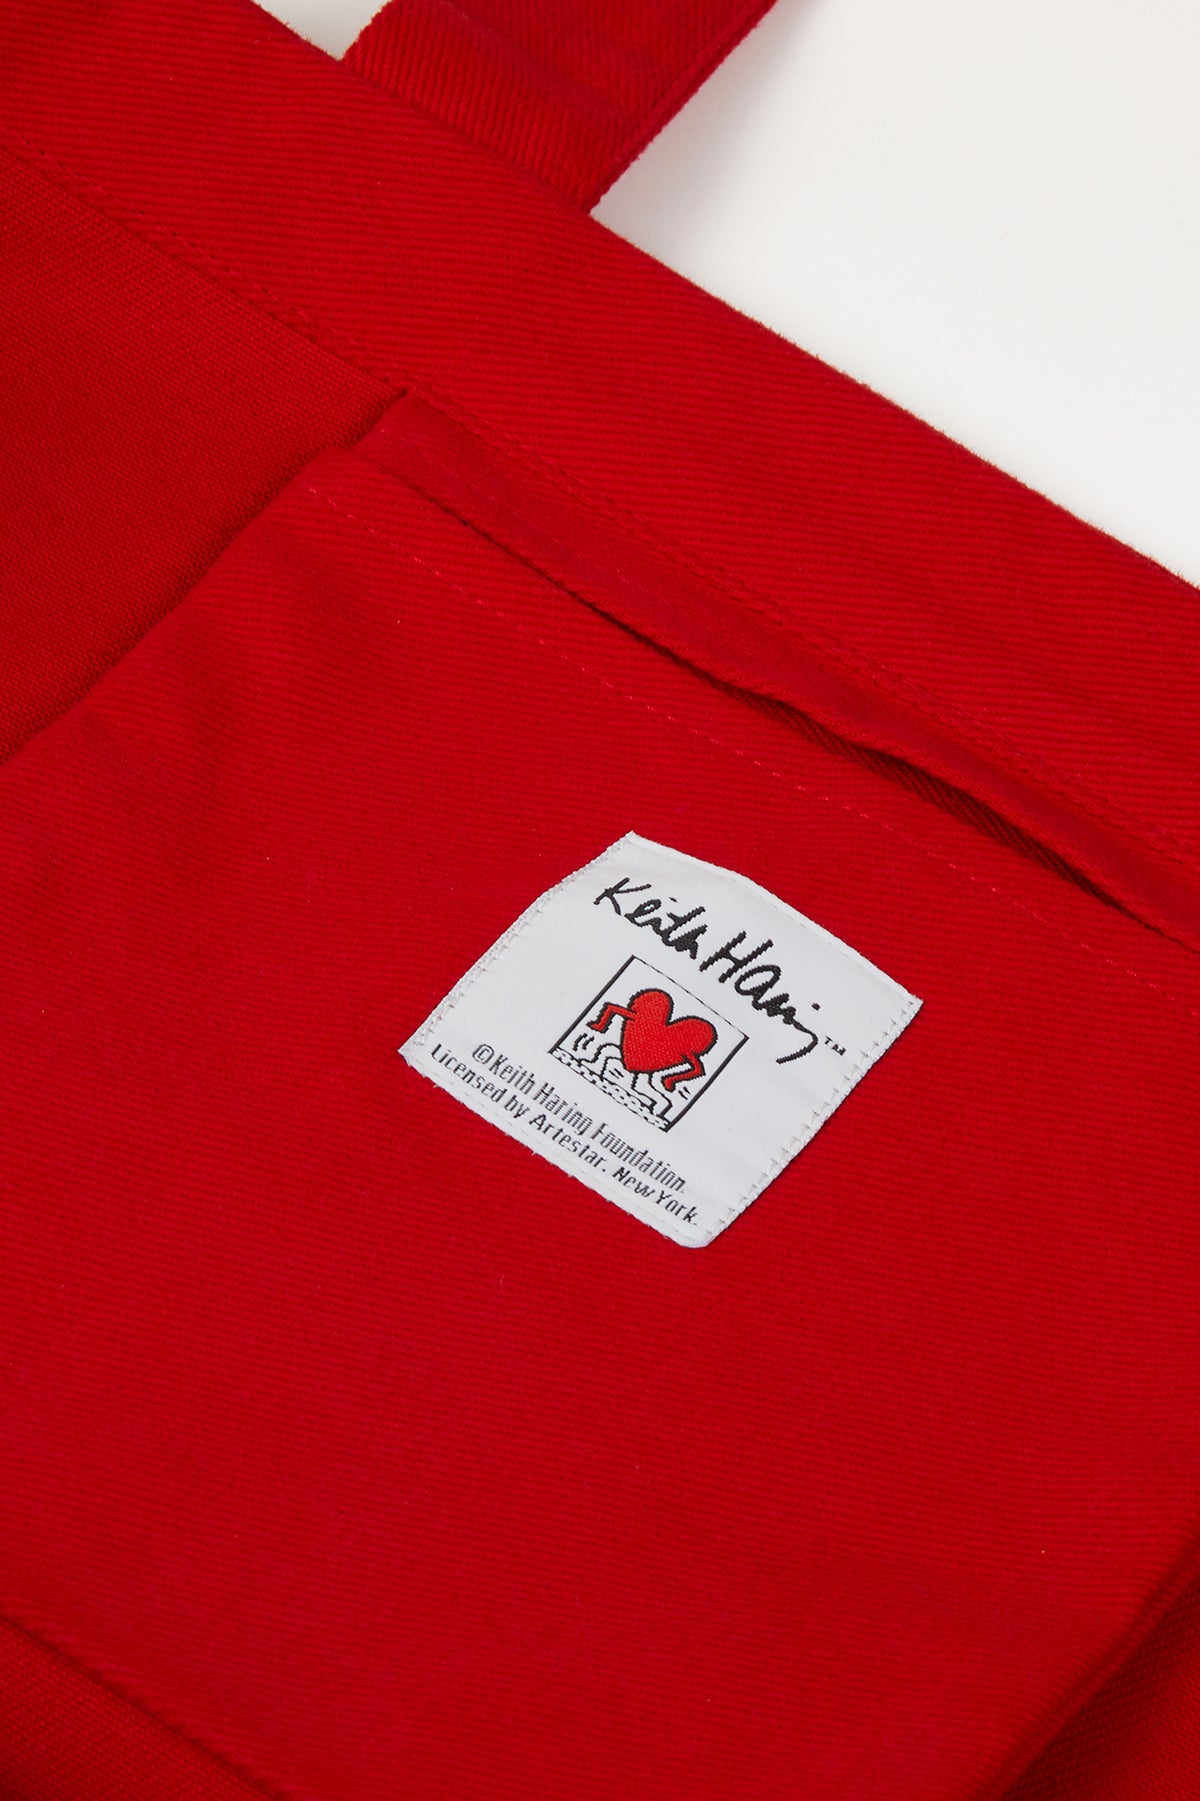 Keith Haring Hug Maxi Allday Çanta - Kırmızı